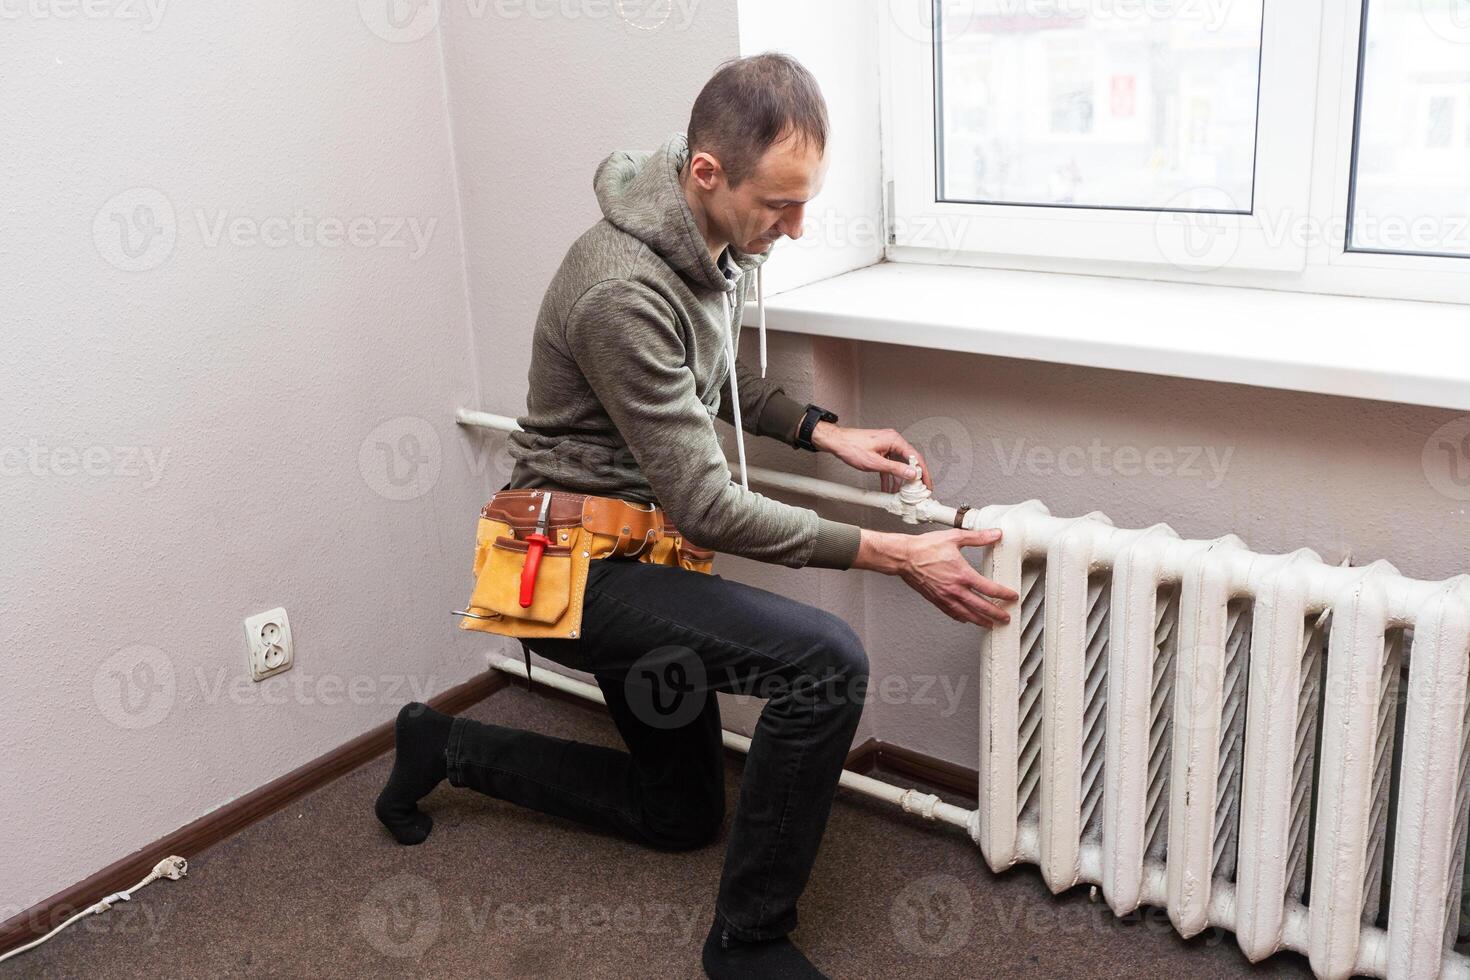 central chauffage mécanicien et bricoleur fixation Accueil radiateur, gaz crise et saisonnier questions. photo